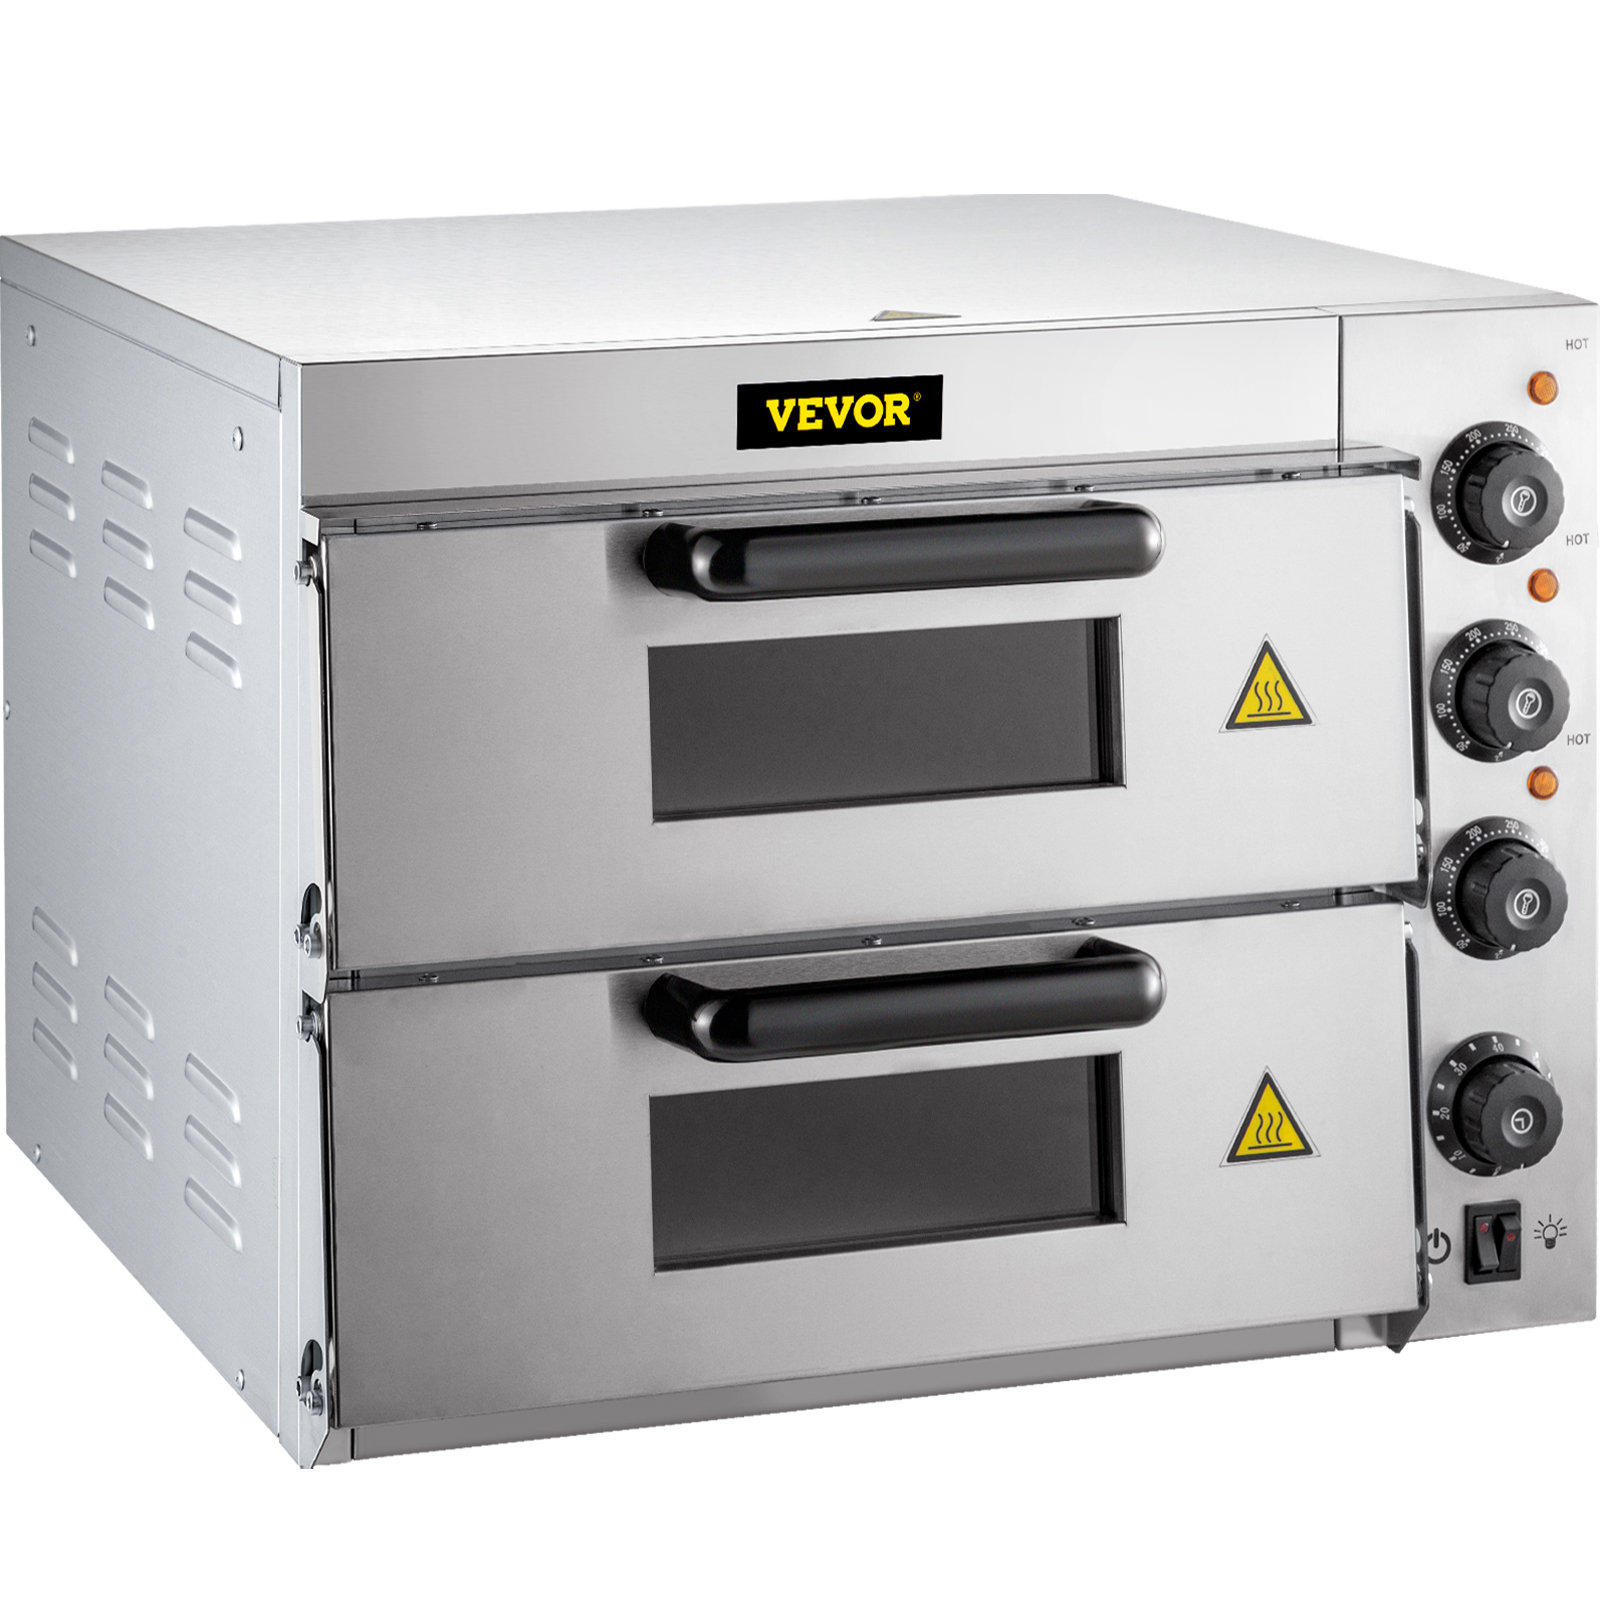 WUJIJIA™ 110 Volt 500 Watt Countertop Convection Oven